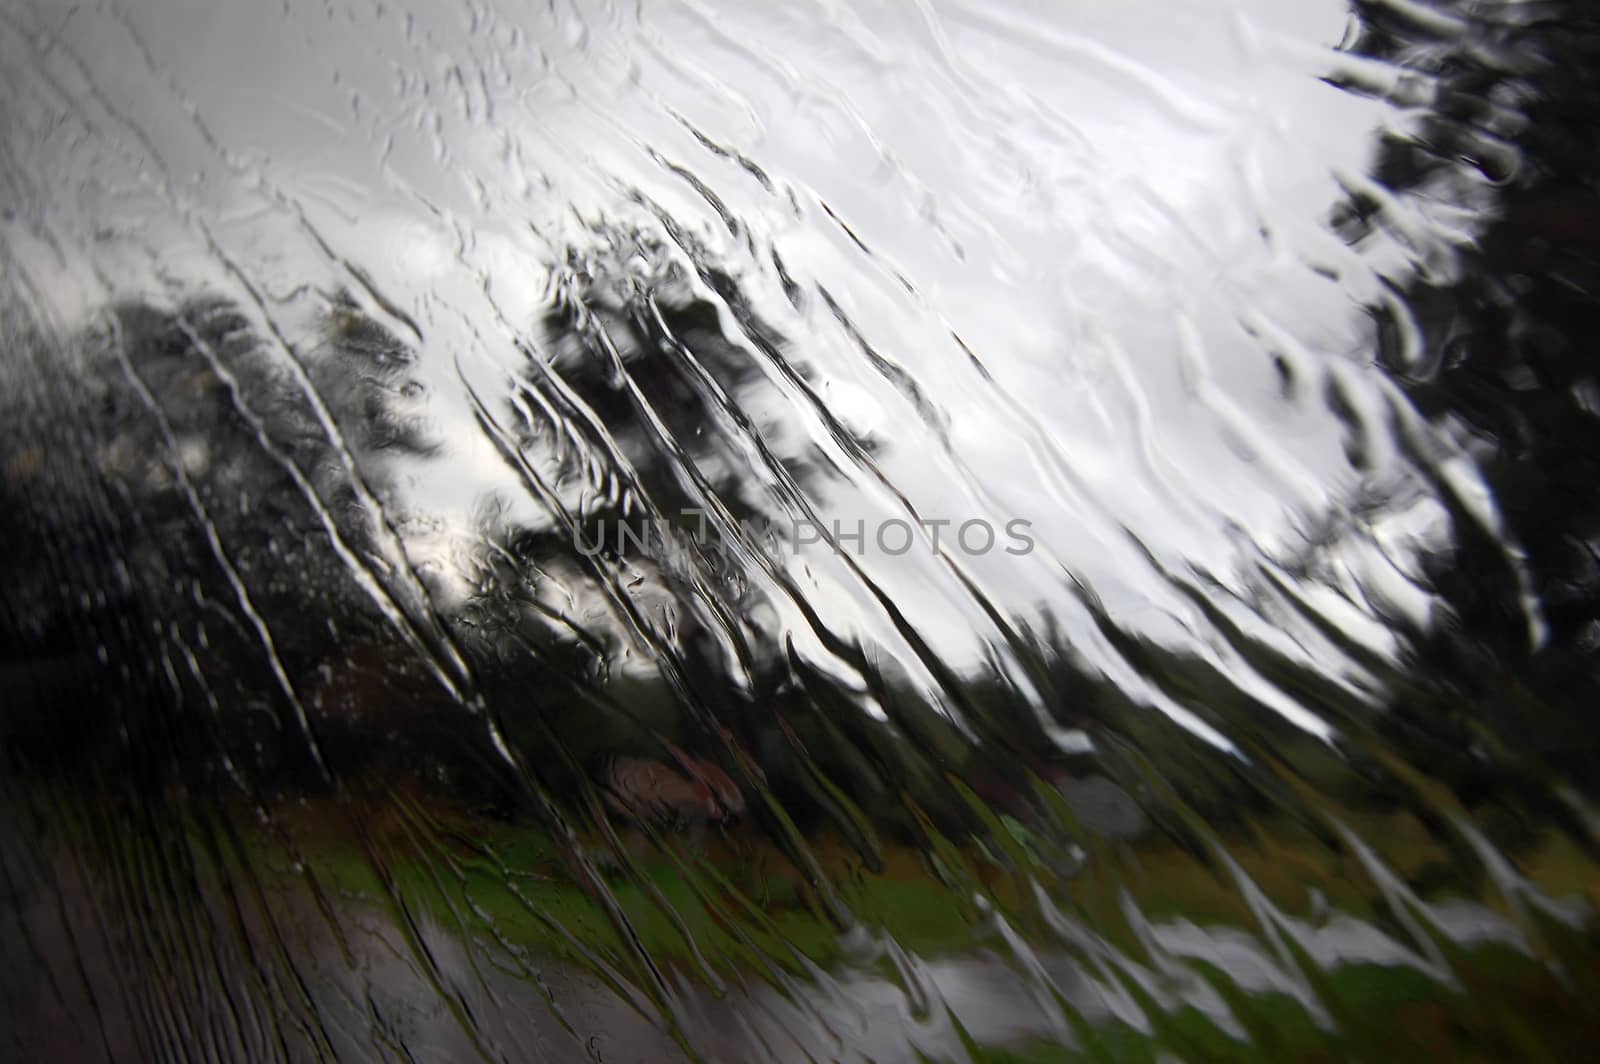 Heavy rain is falling under the window glass